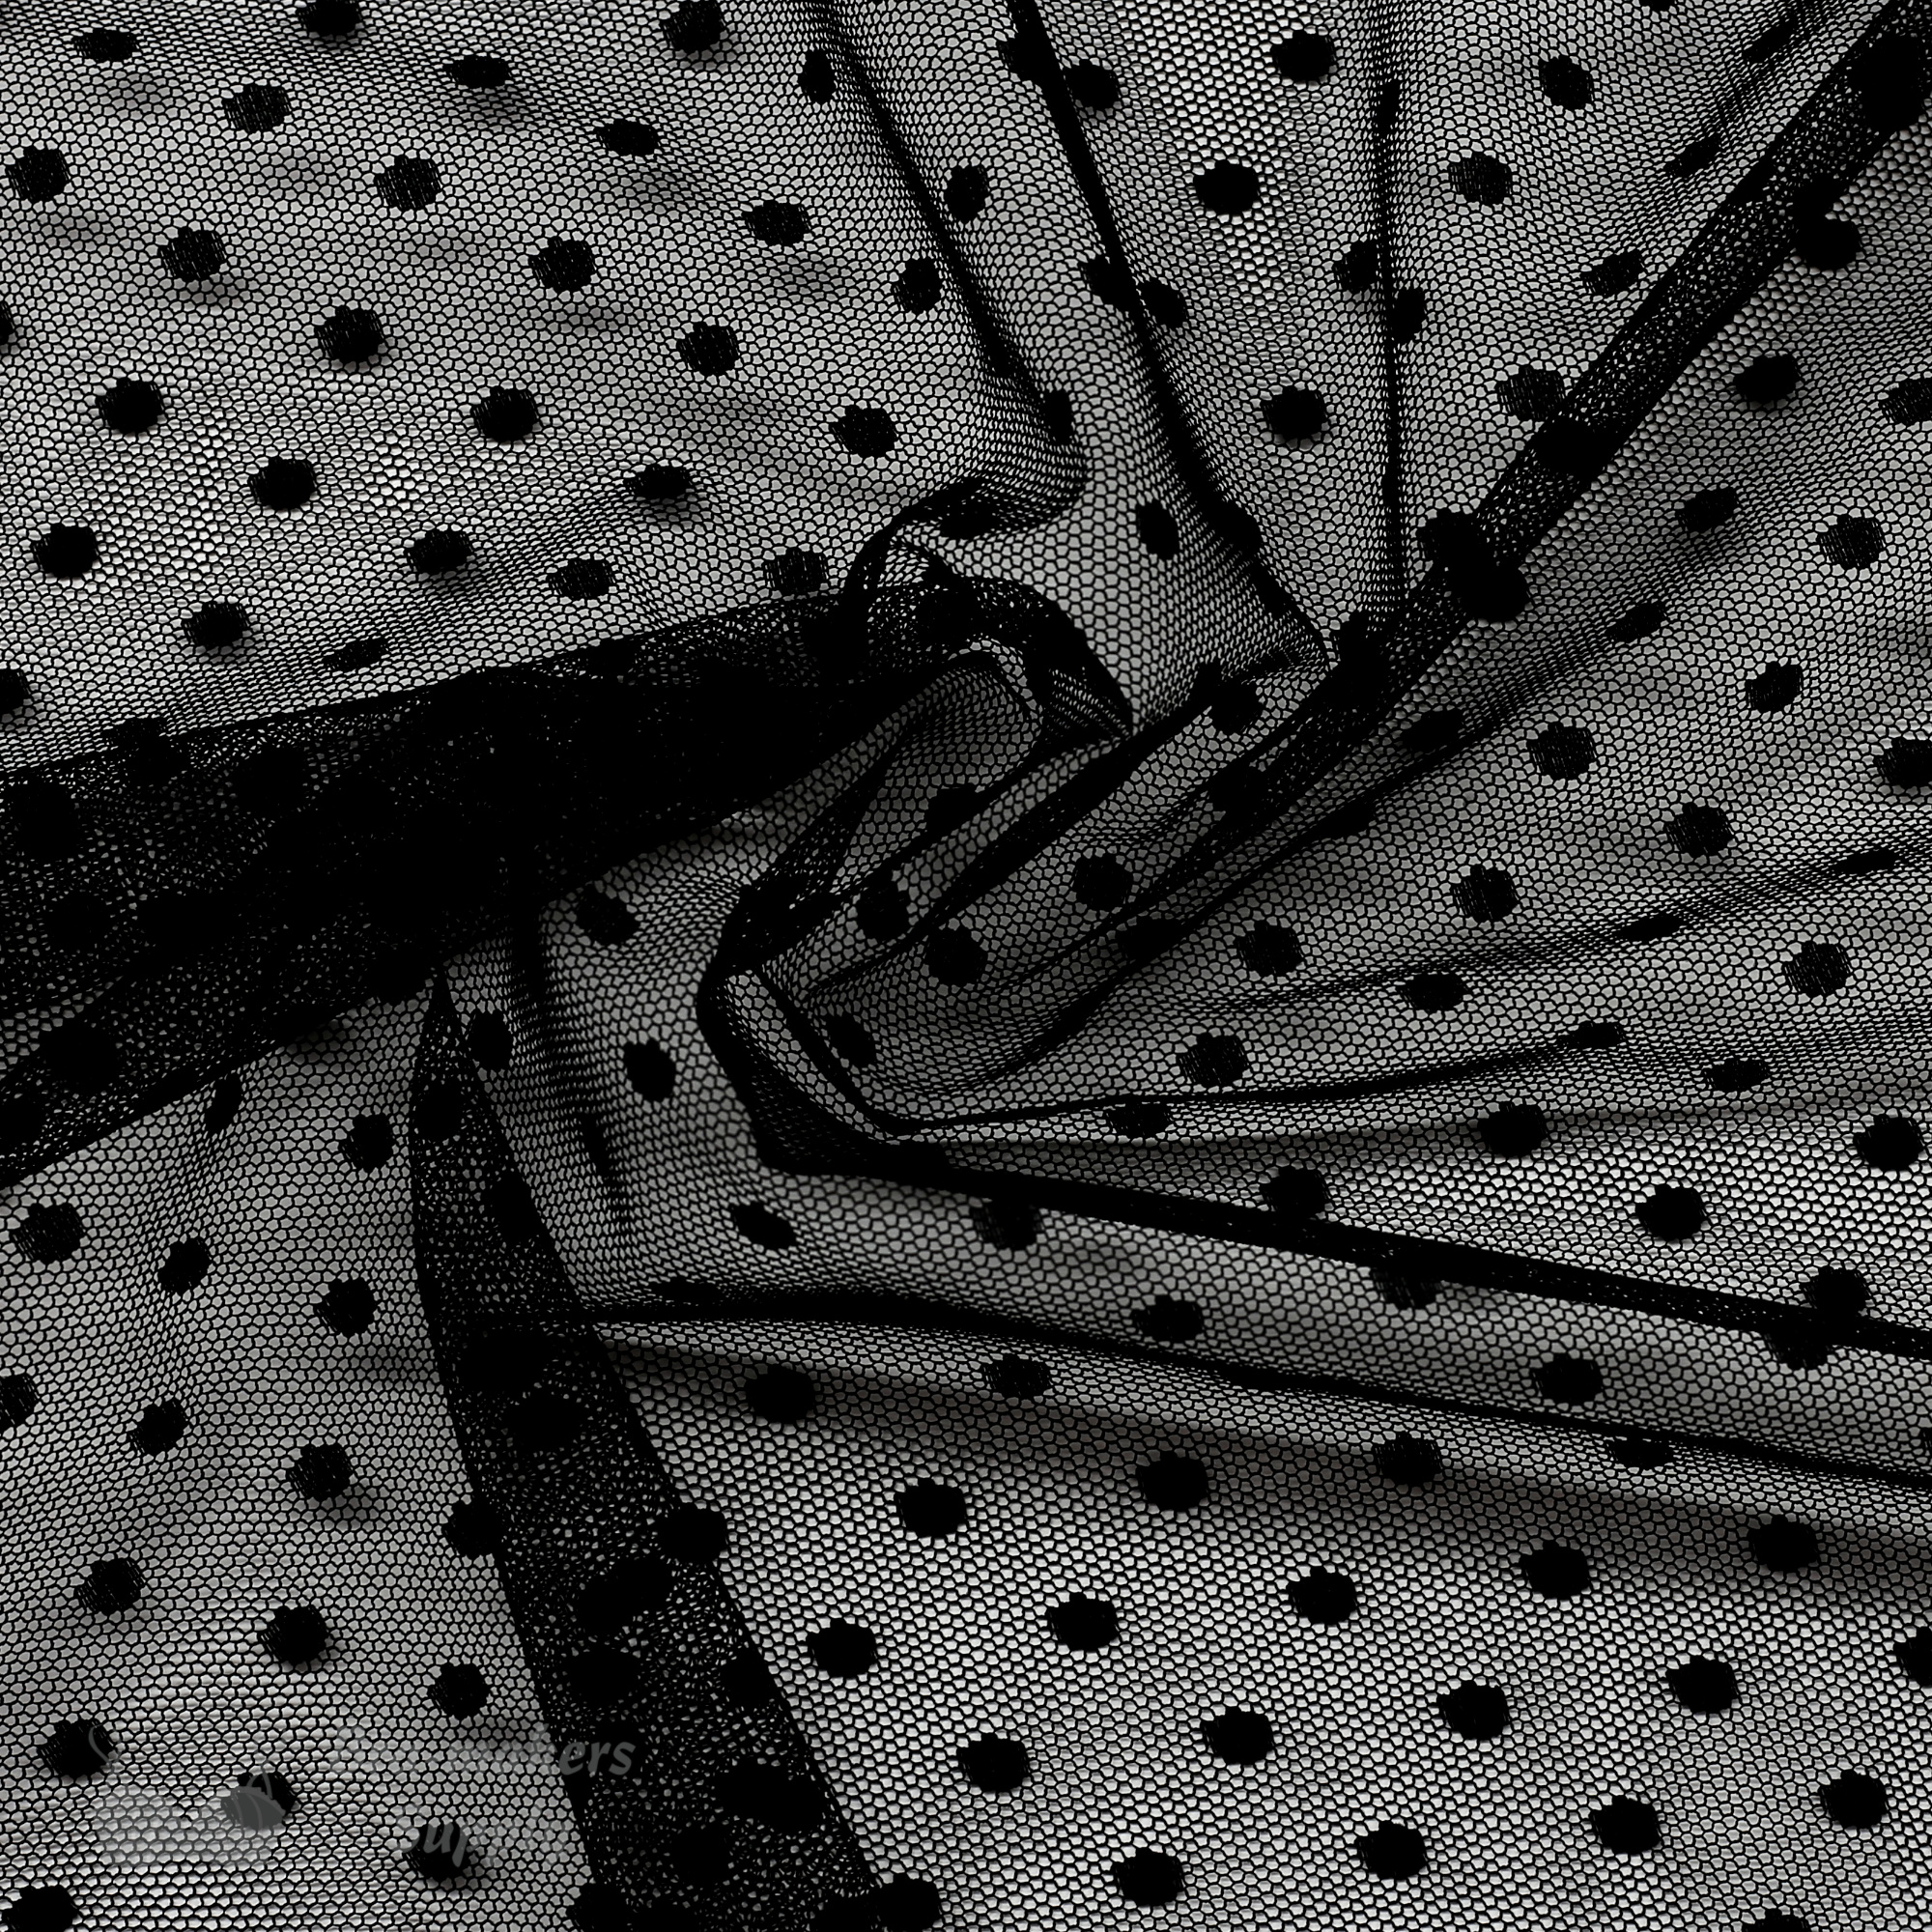 Fun Dot Mesh Fabric, a playful mesh fabric